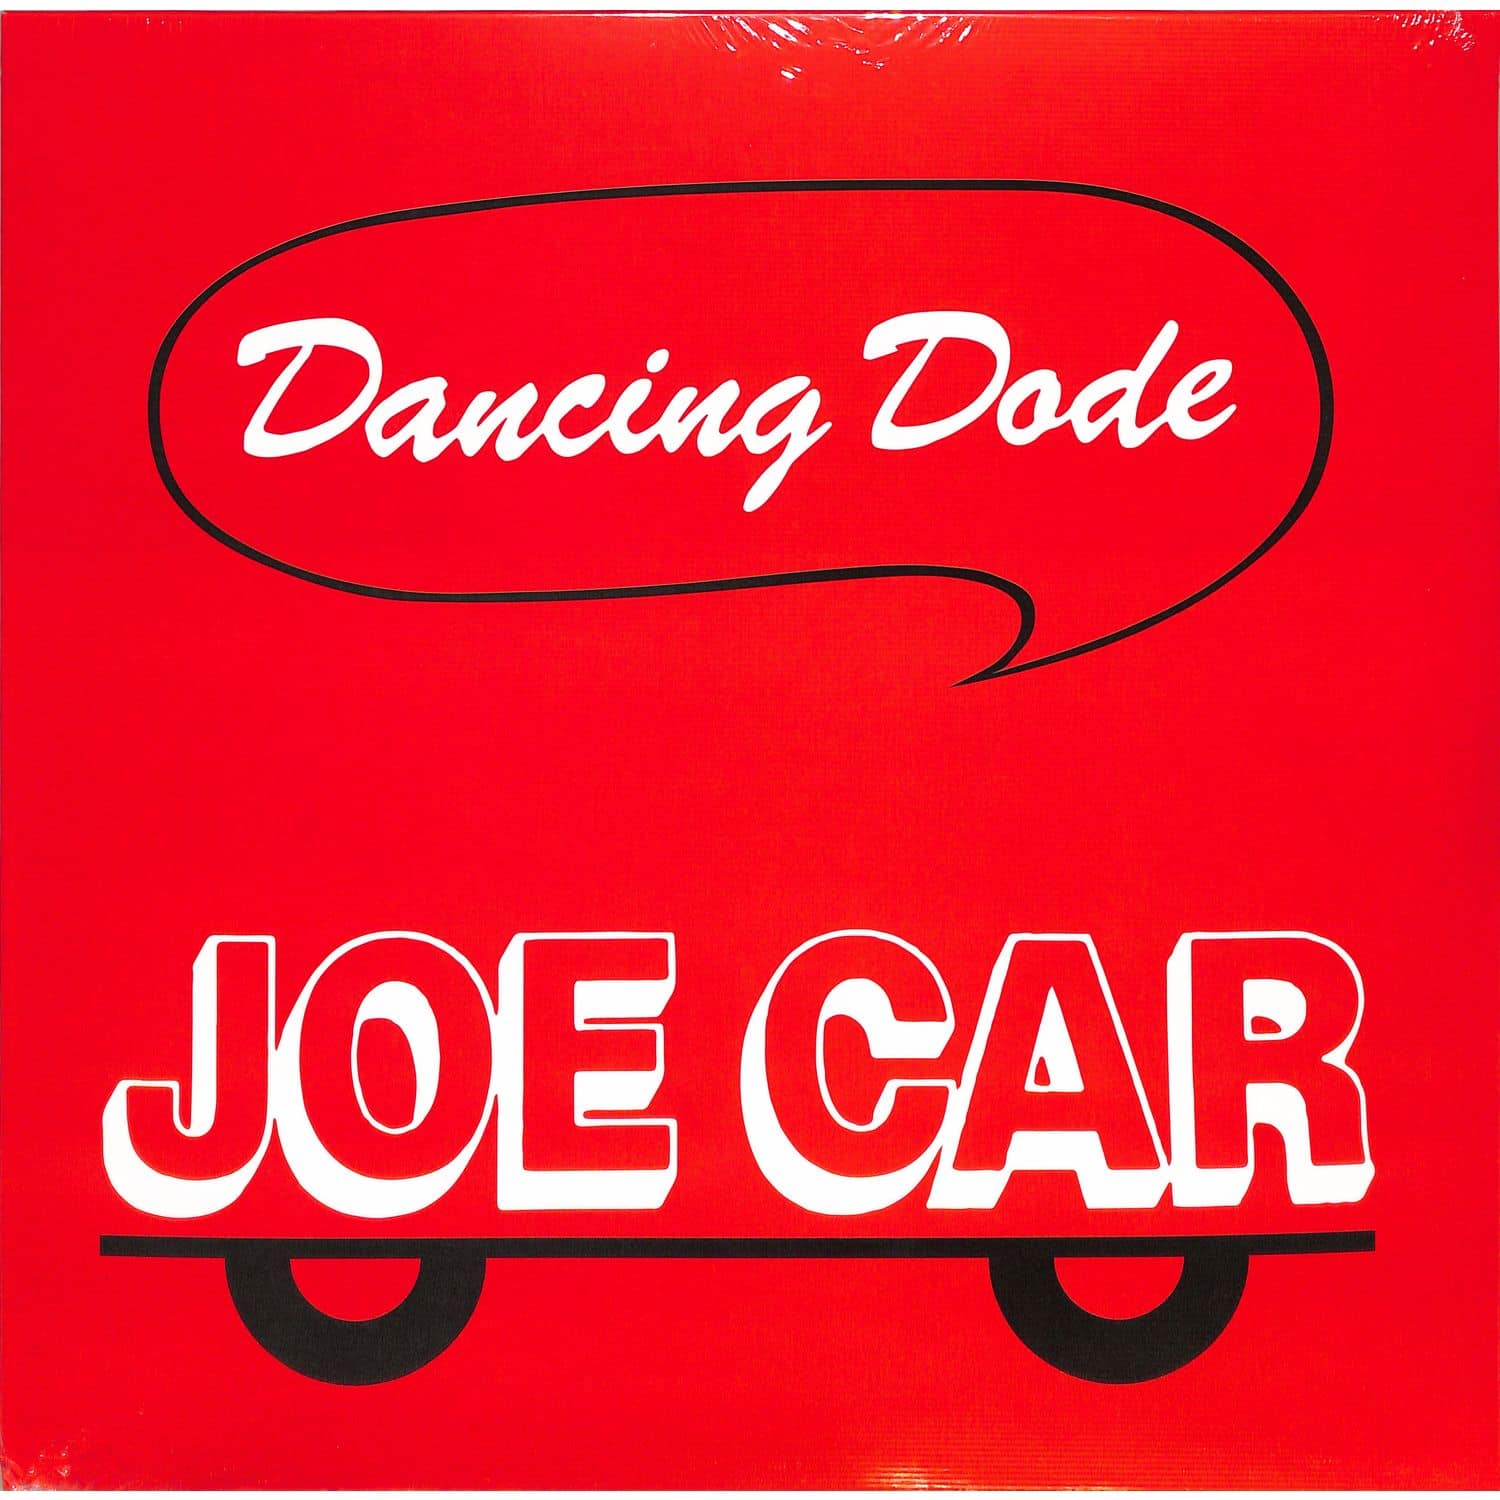 Joe Car - DANCING DODE